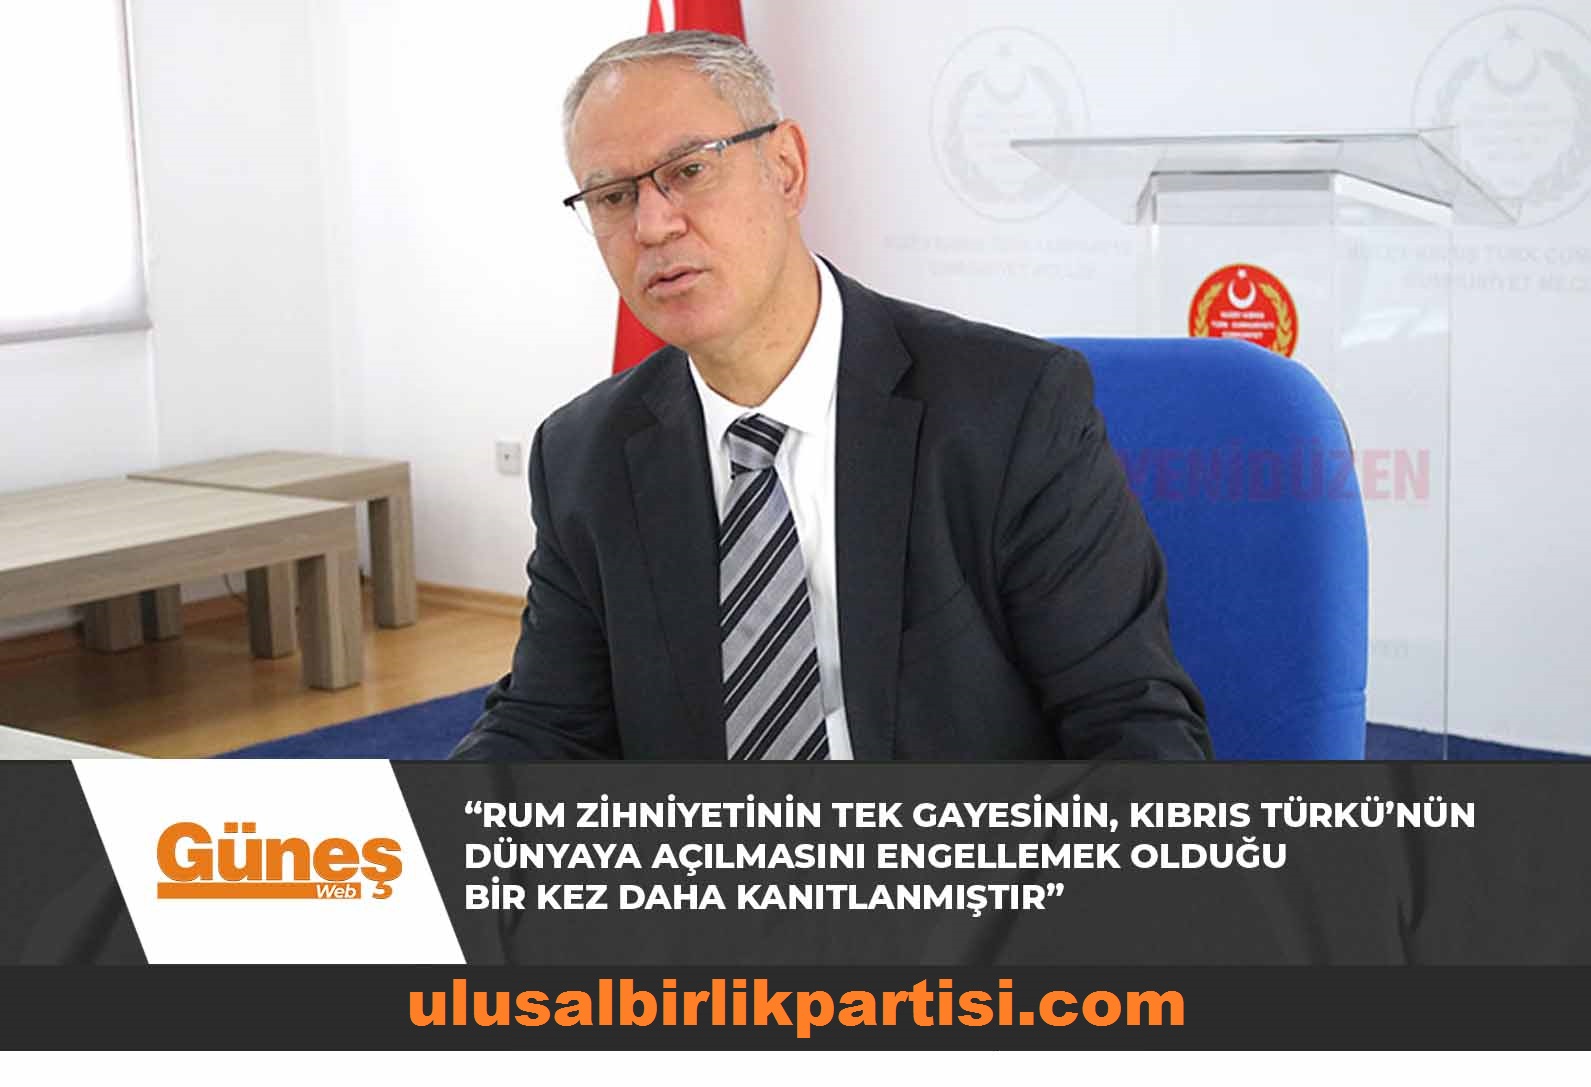 Read more about the article Hasipoğlu: “Rum zihniyetinin tek gayesinin, Kıbrıs Türkü’nün dünyaya açılmasını engellemek olduğu bir kez daha kanıtlanmıştır”